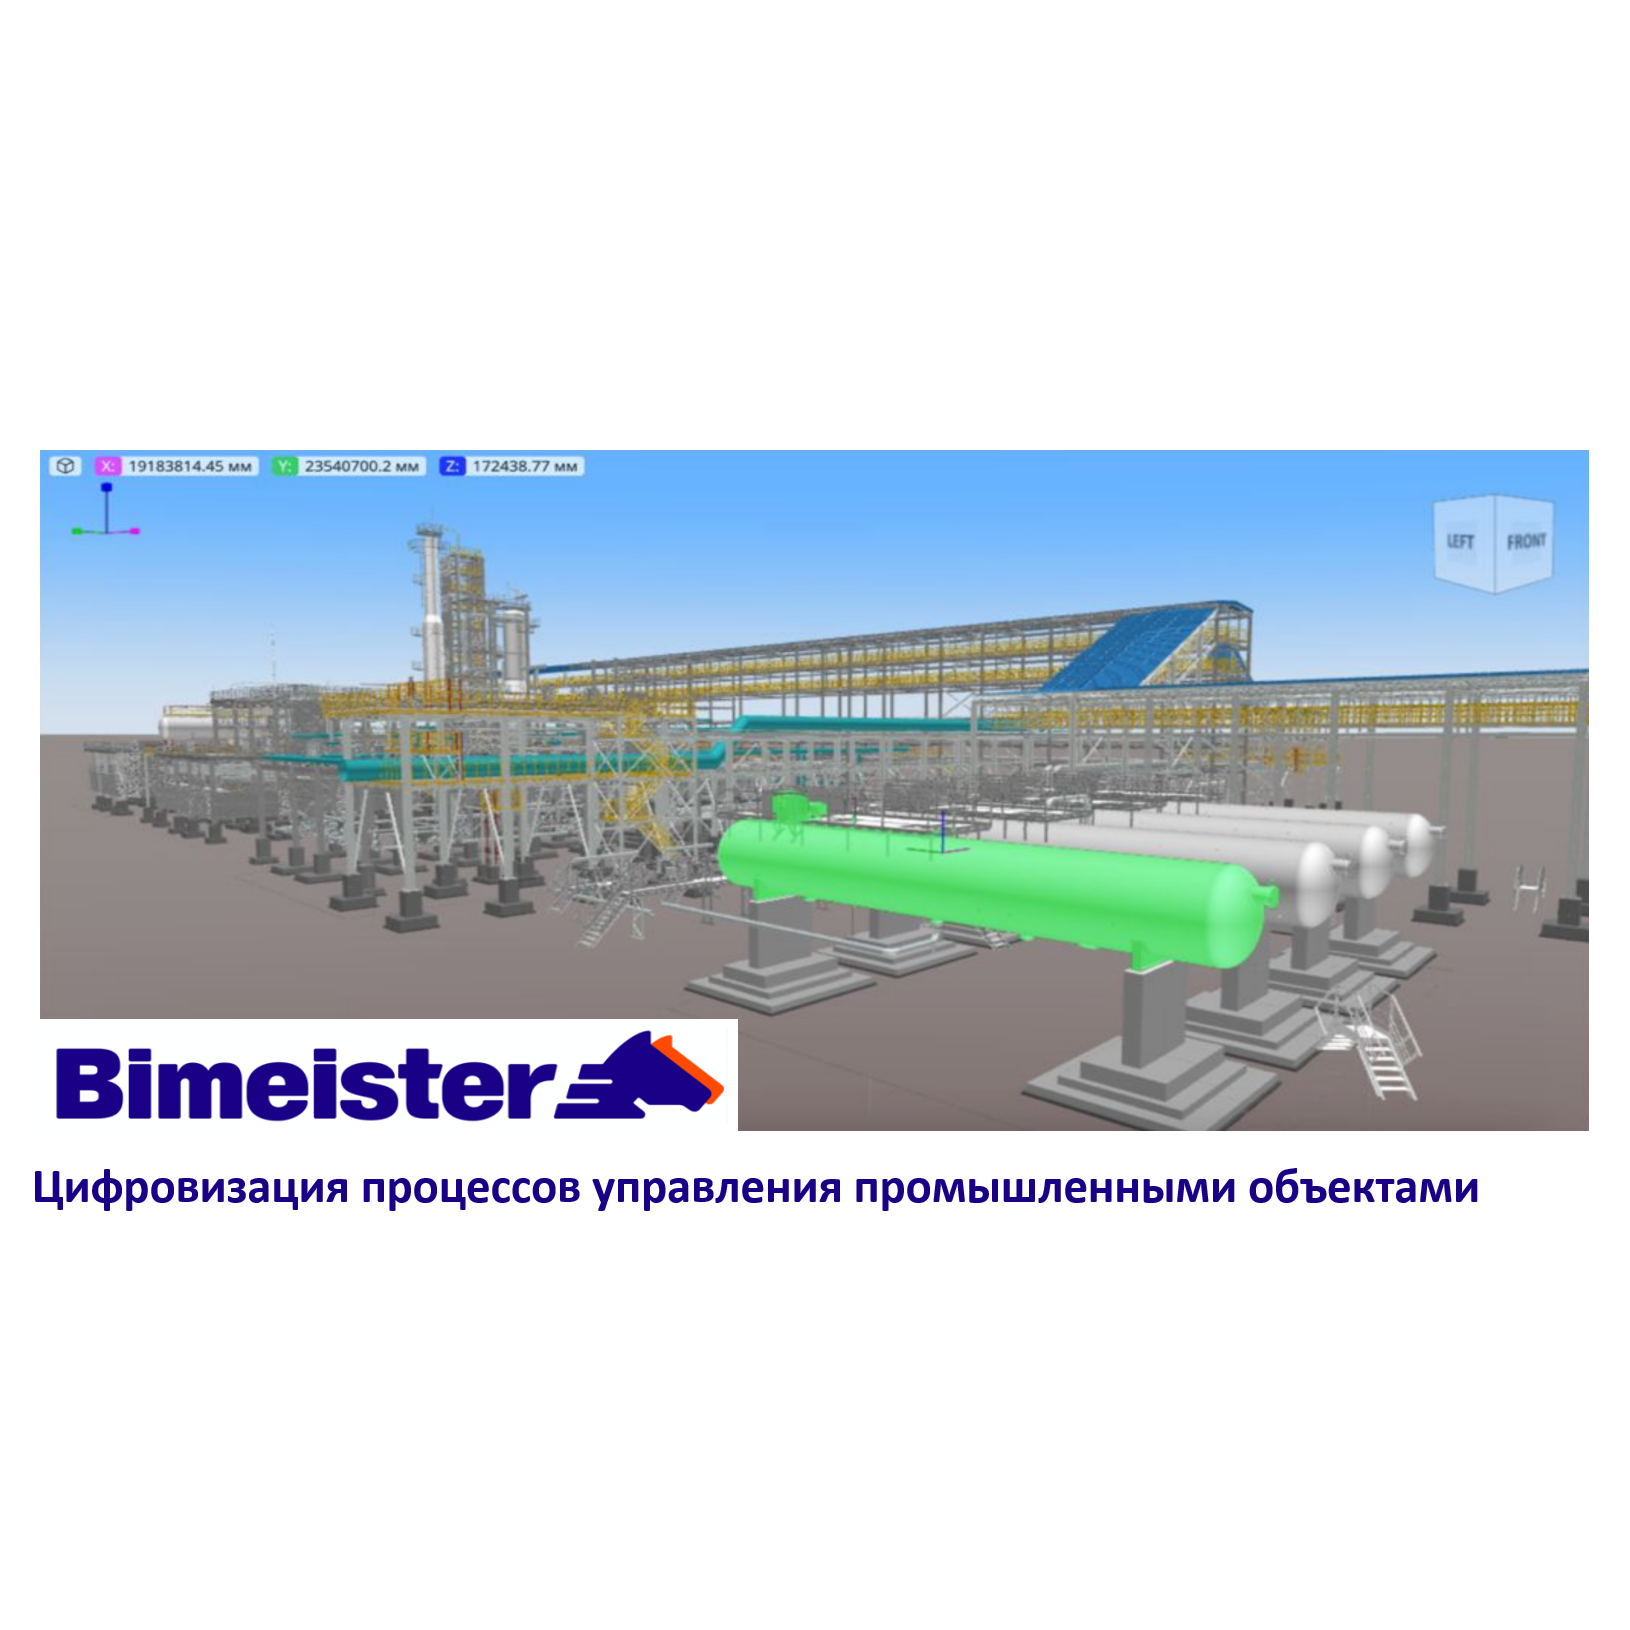 Разработчик IT-продуктов для промышленности Bimeister вошел в состав Группы «ОМЗ»